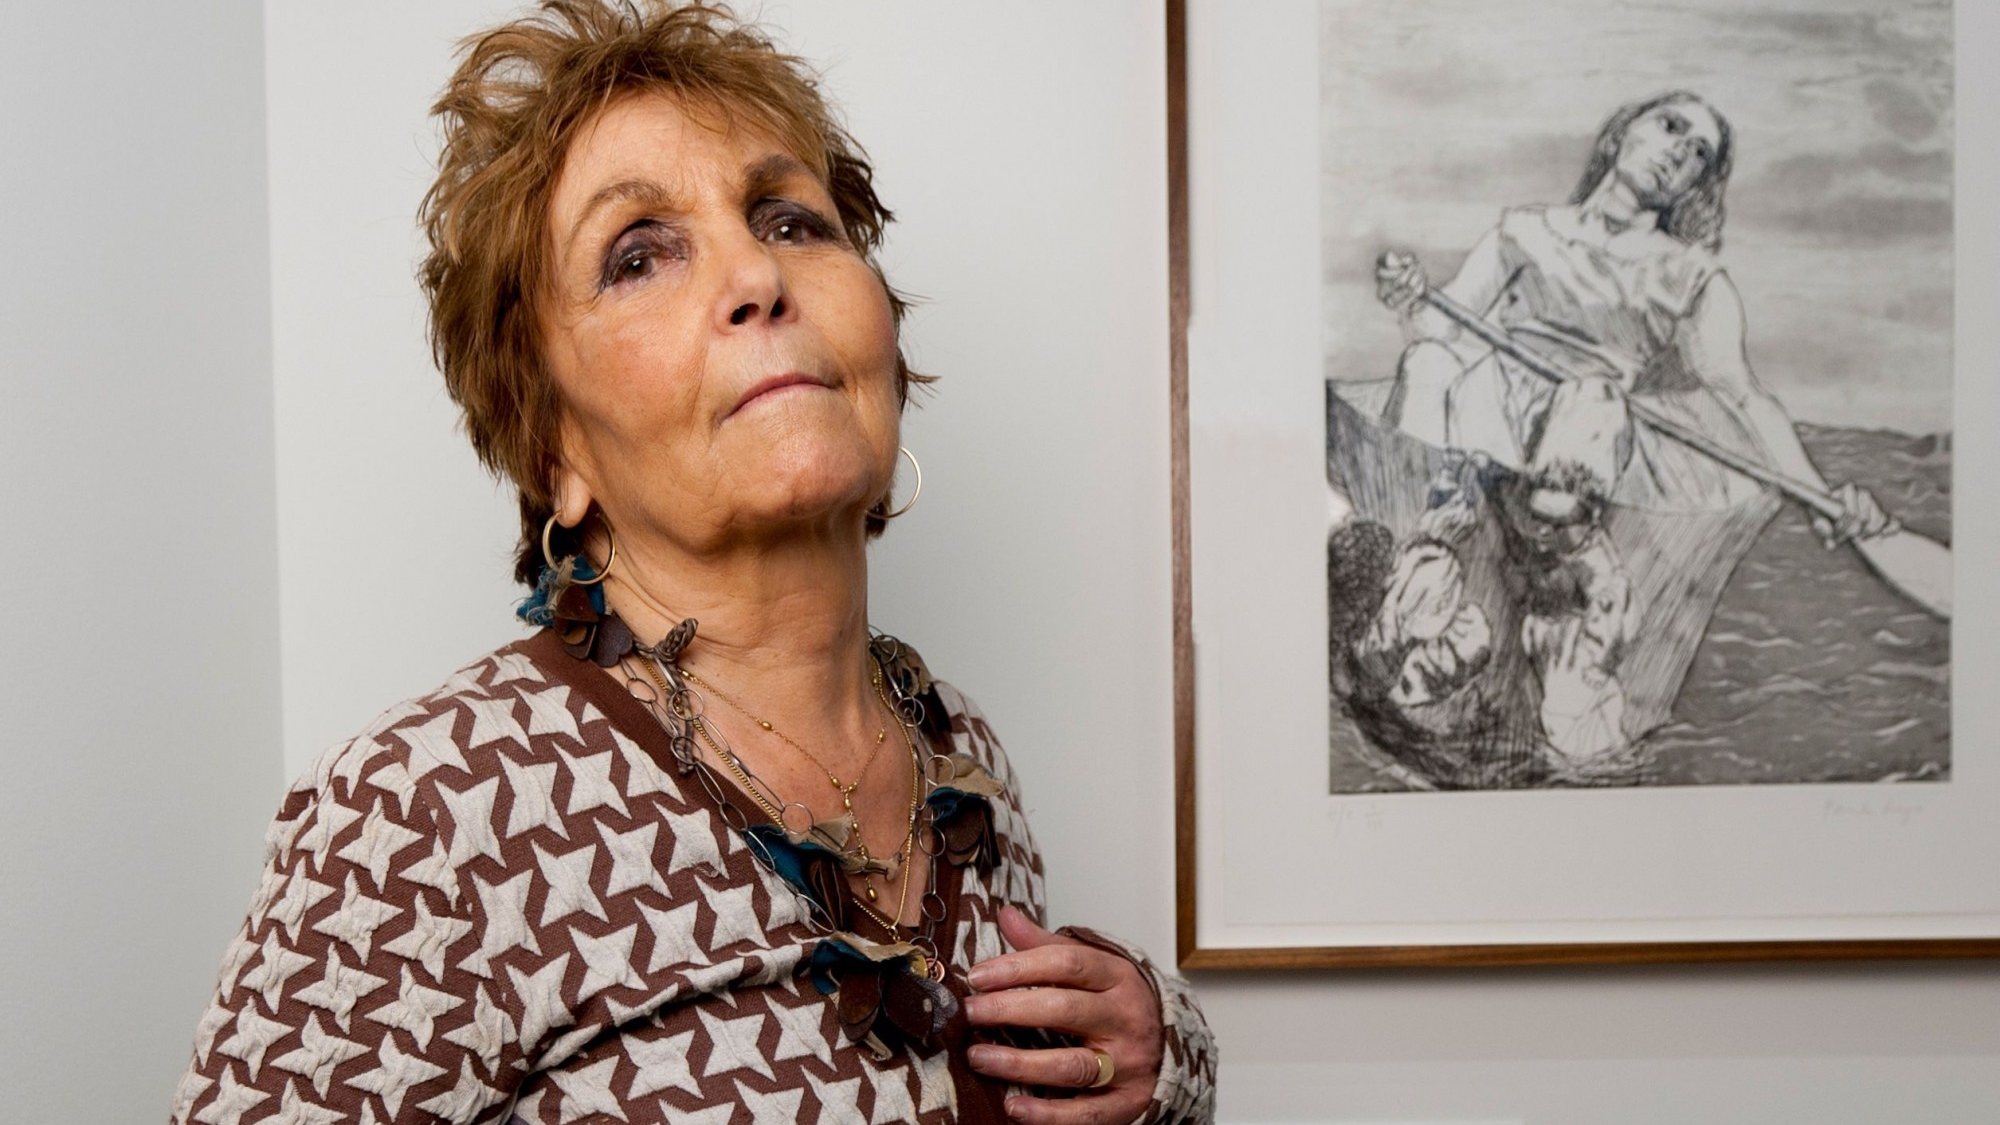 Paula Rego nasceu a 26 de janeiro de 1935, em Lisboa, e radicou-se no Reino Unido nos anos 70